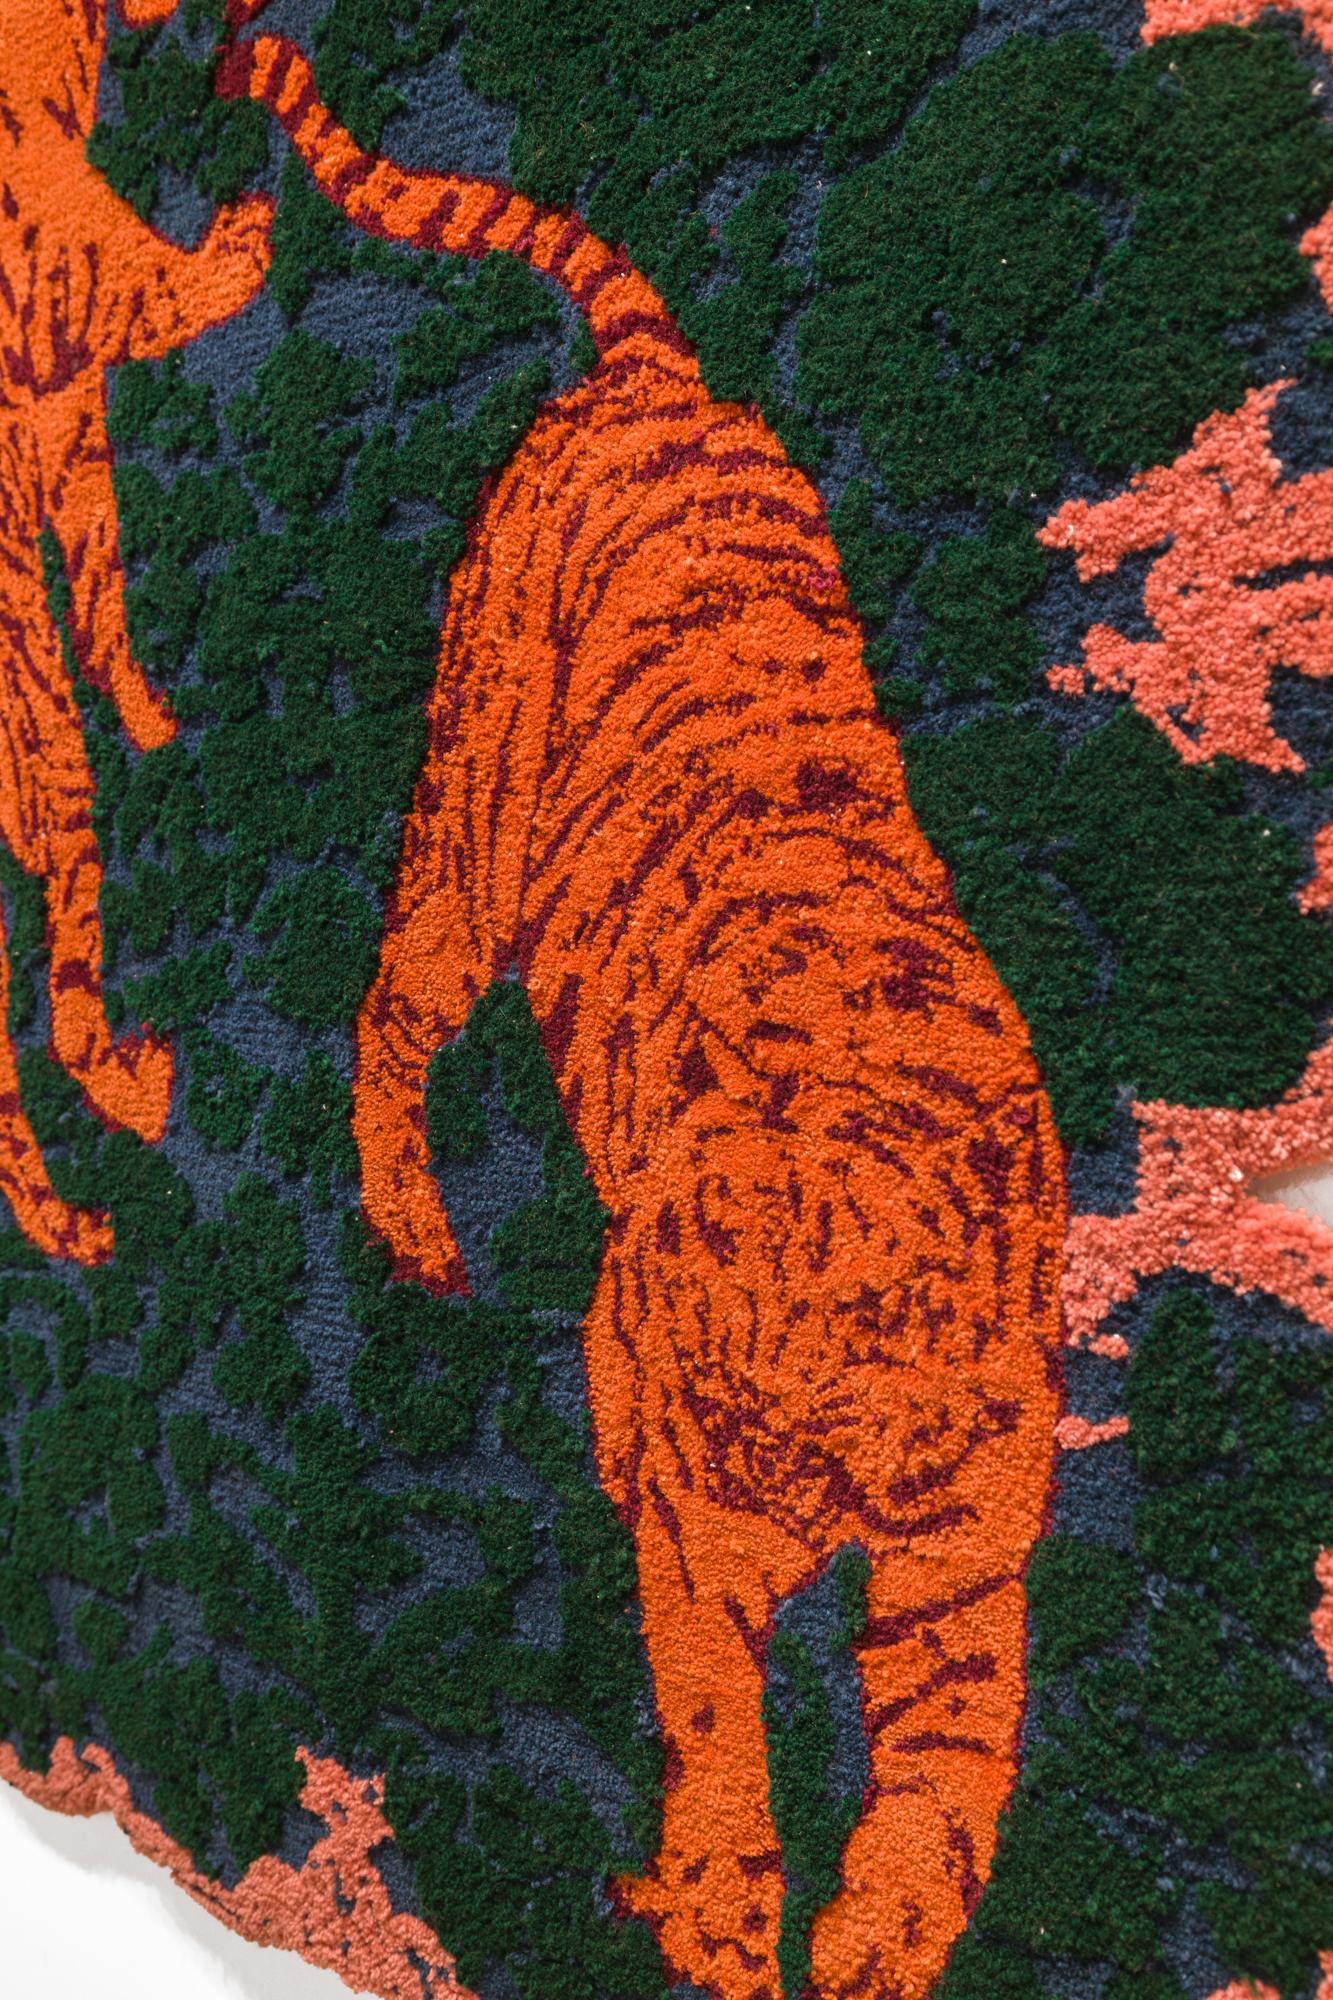 pink tiger rug